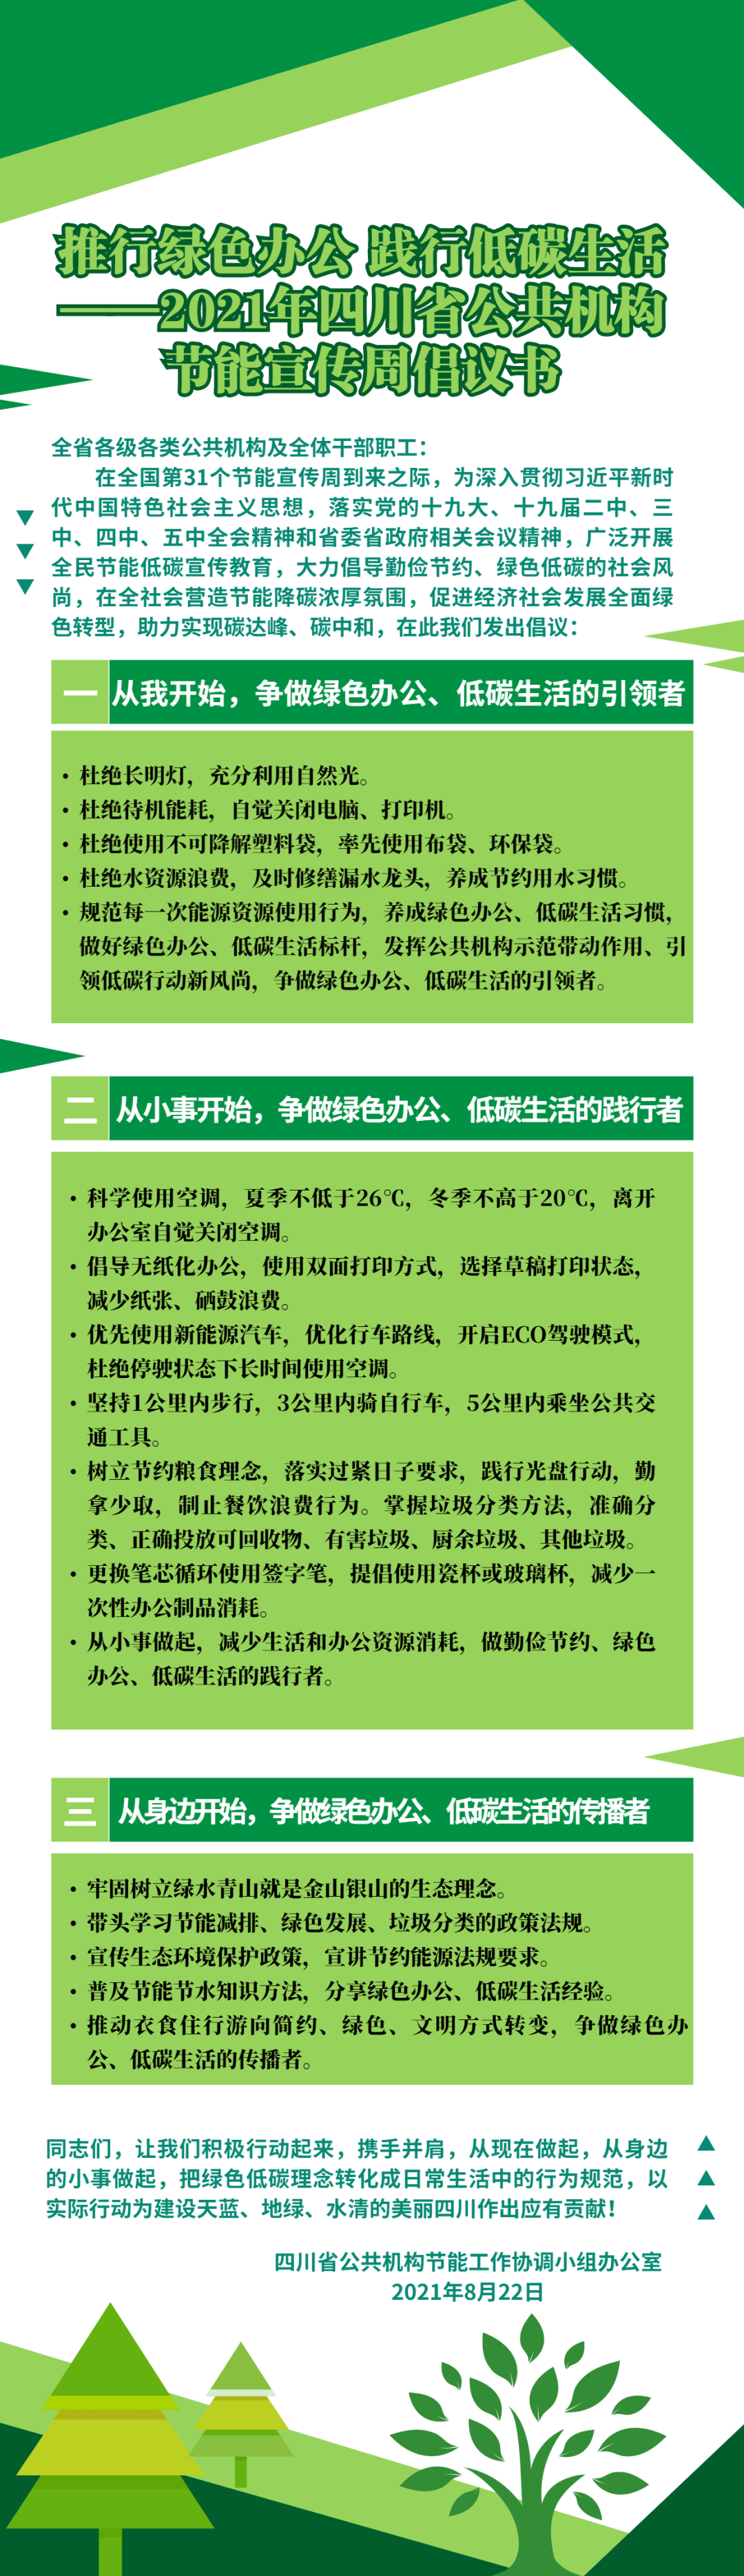 推行绿色办公 践行低碳生活 ——2021年四川省公共机构节能宣传周倡议